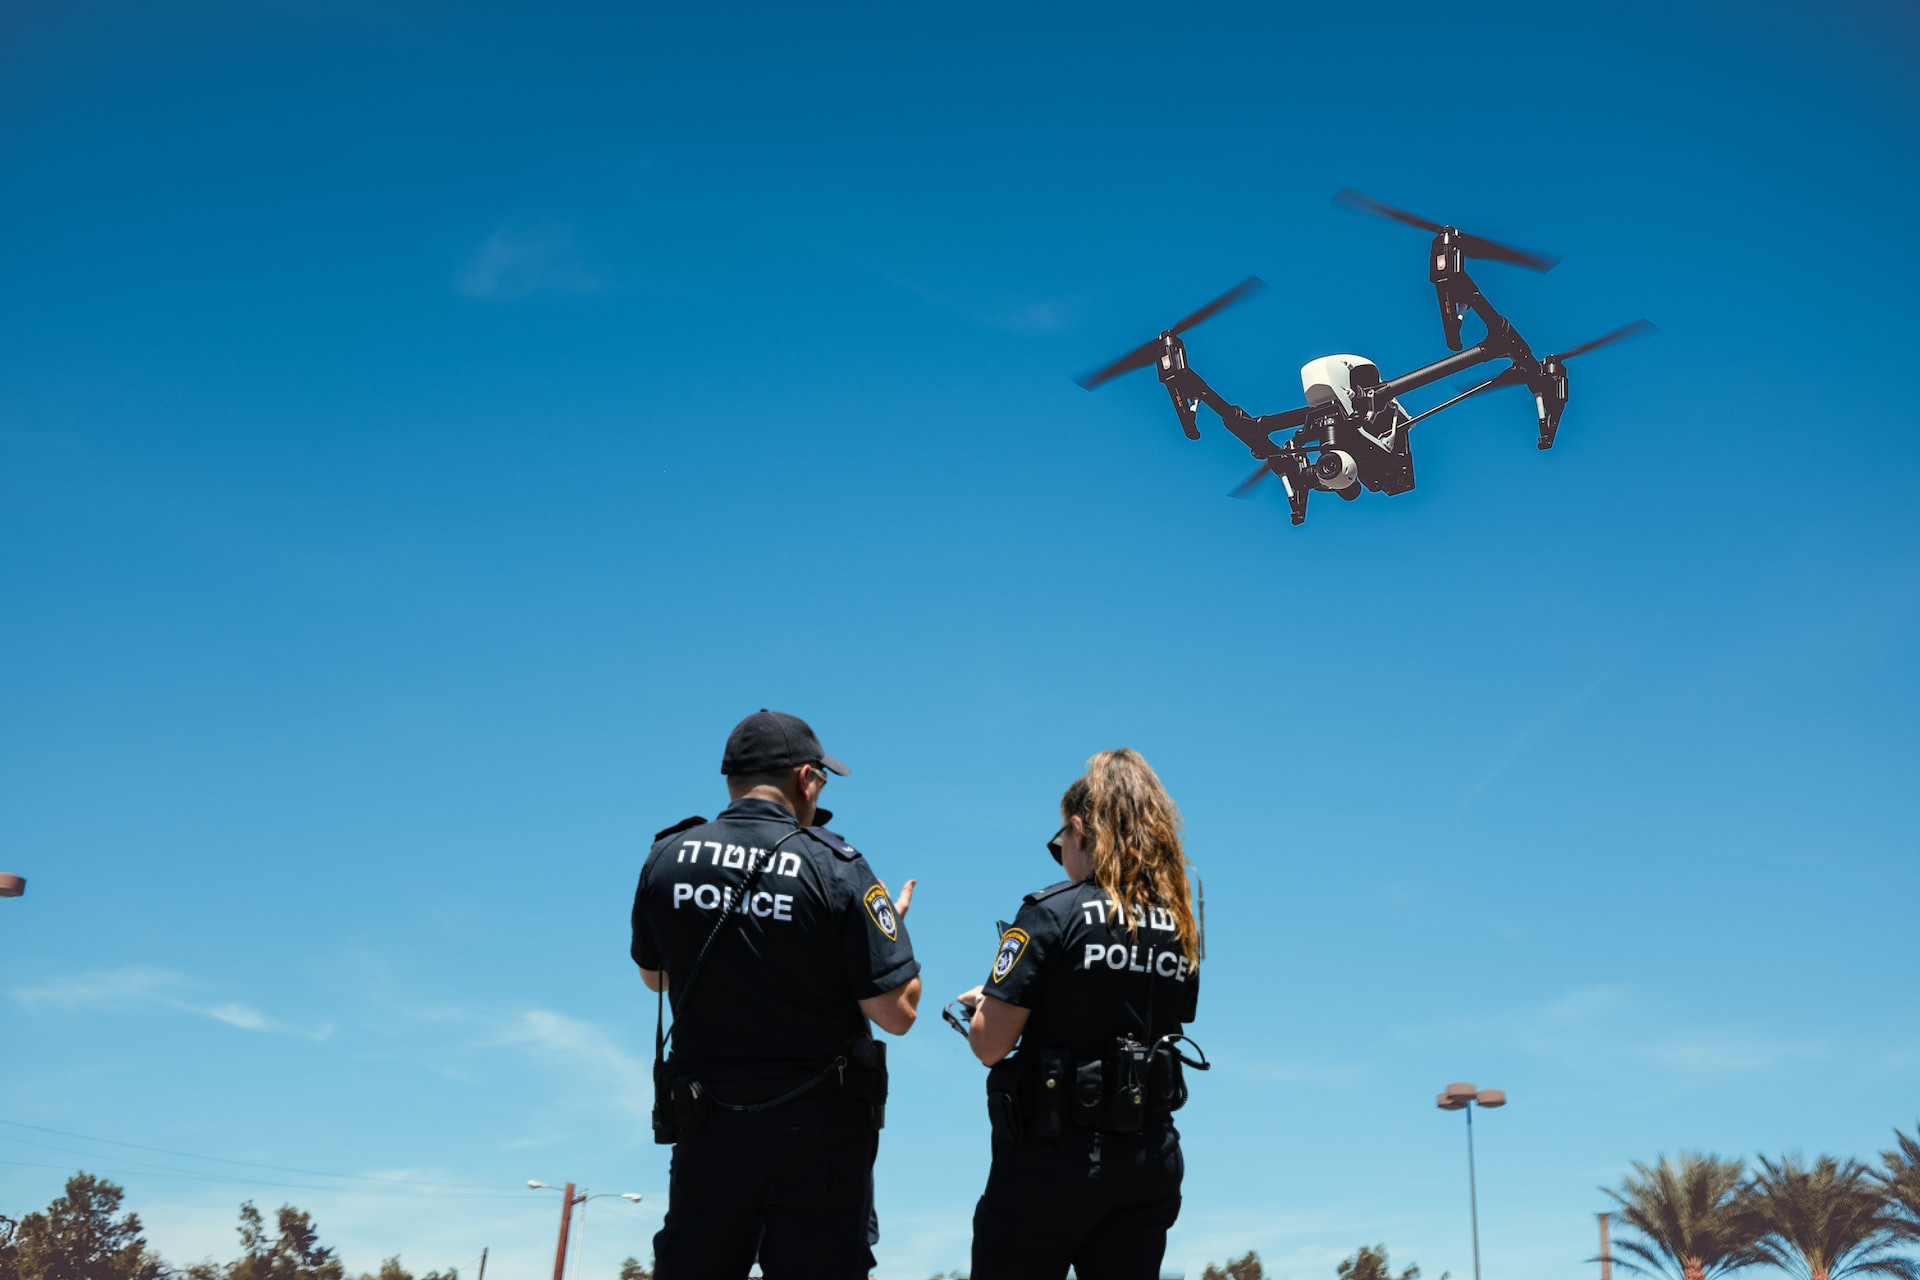 https://www.jouav.com/wp-content/uploads/2022/10/police-drone.jpg